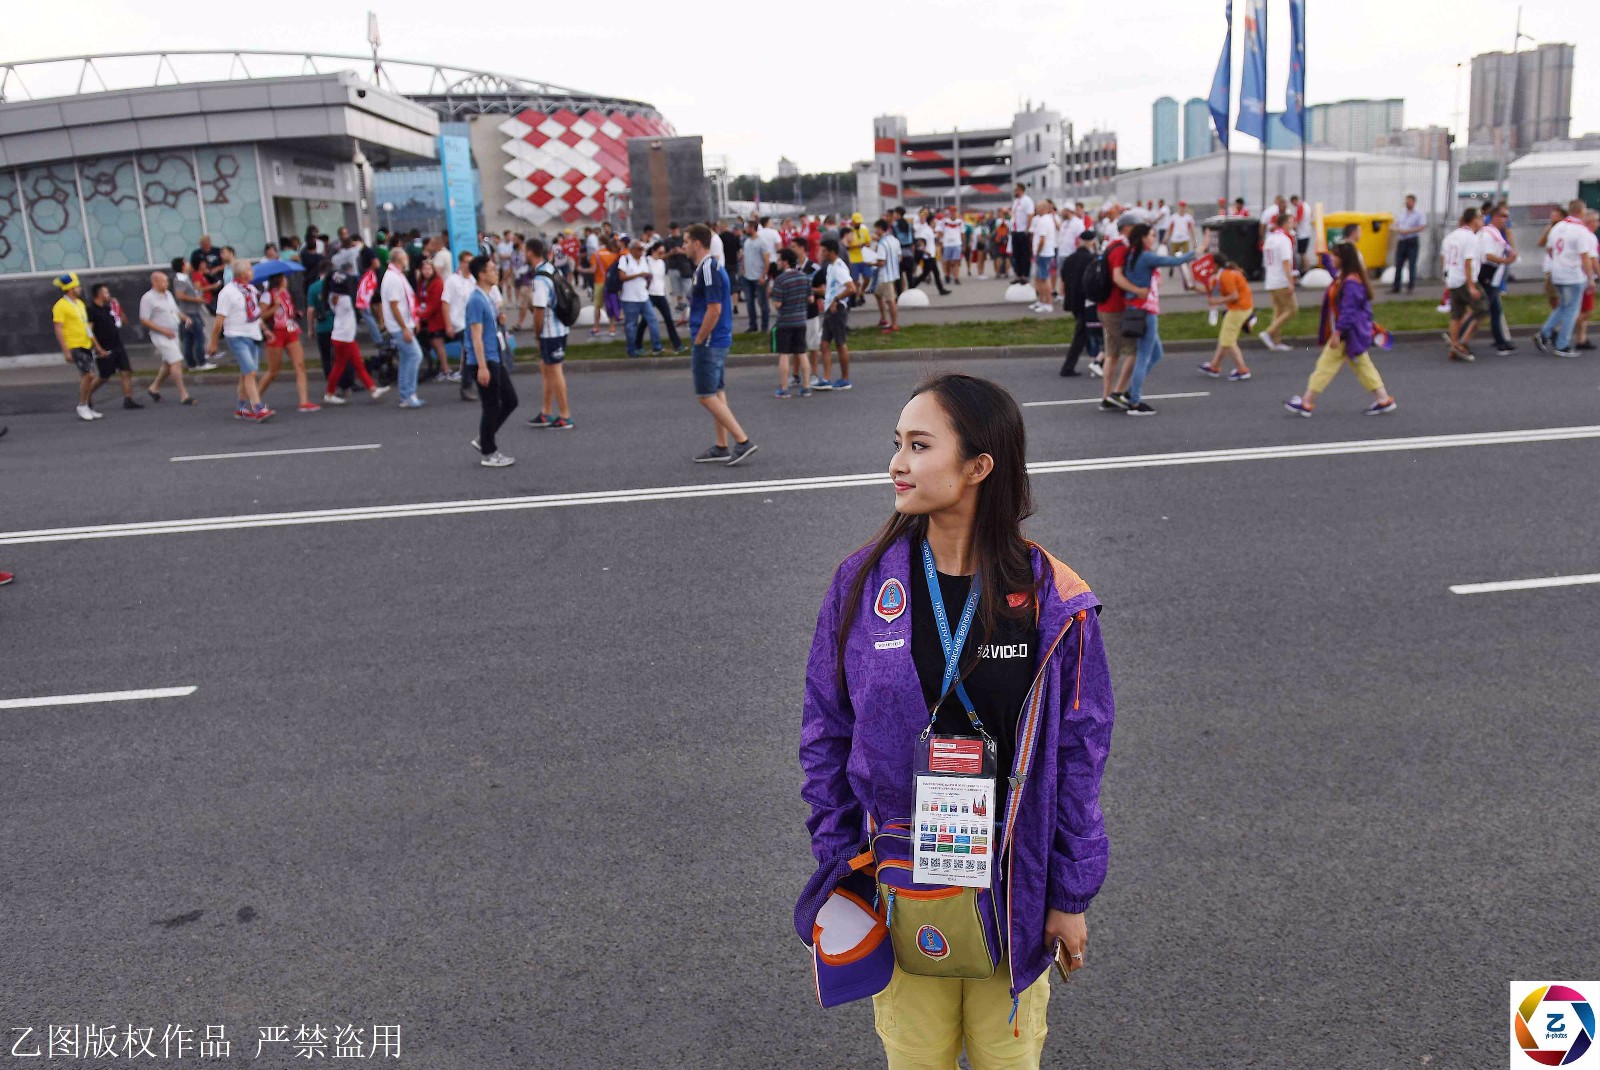 世界杯志愿者中国女孩,因太美常被球迷搂着拍